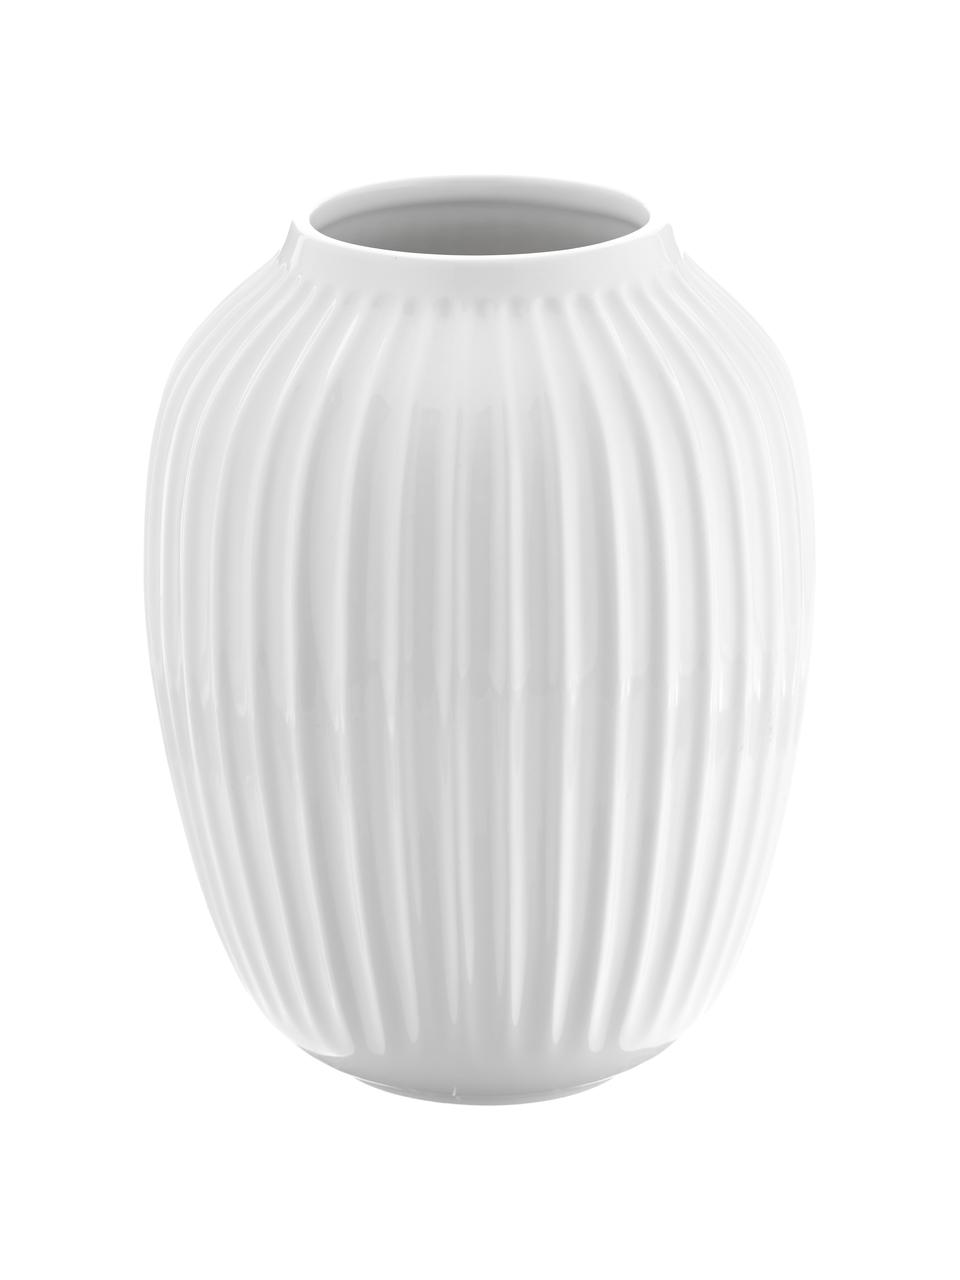 Handgefertigte Porzellan-Vase Hammershoi in Weiß, Porzellan, Weiß, Ø 20 x H 25 cm